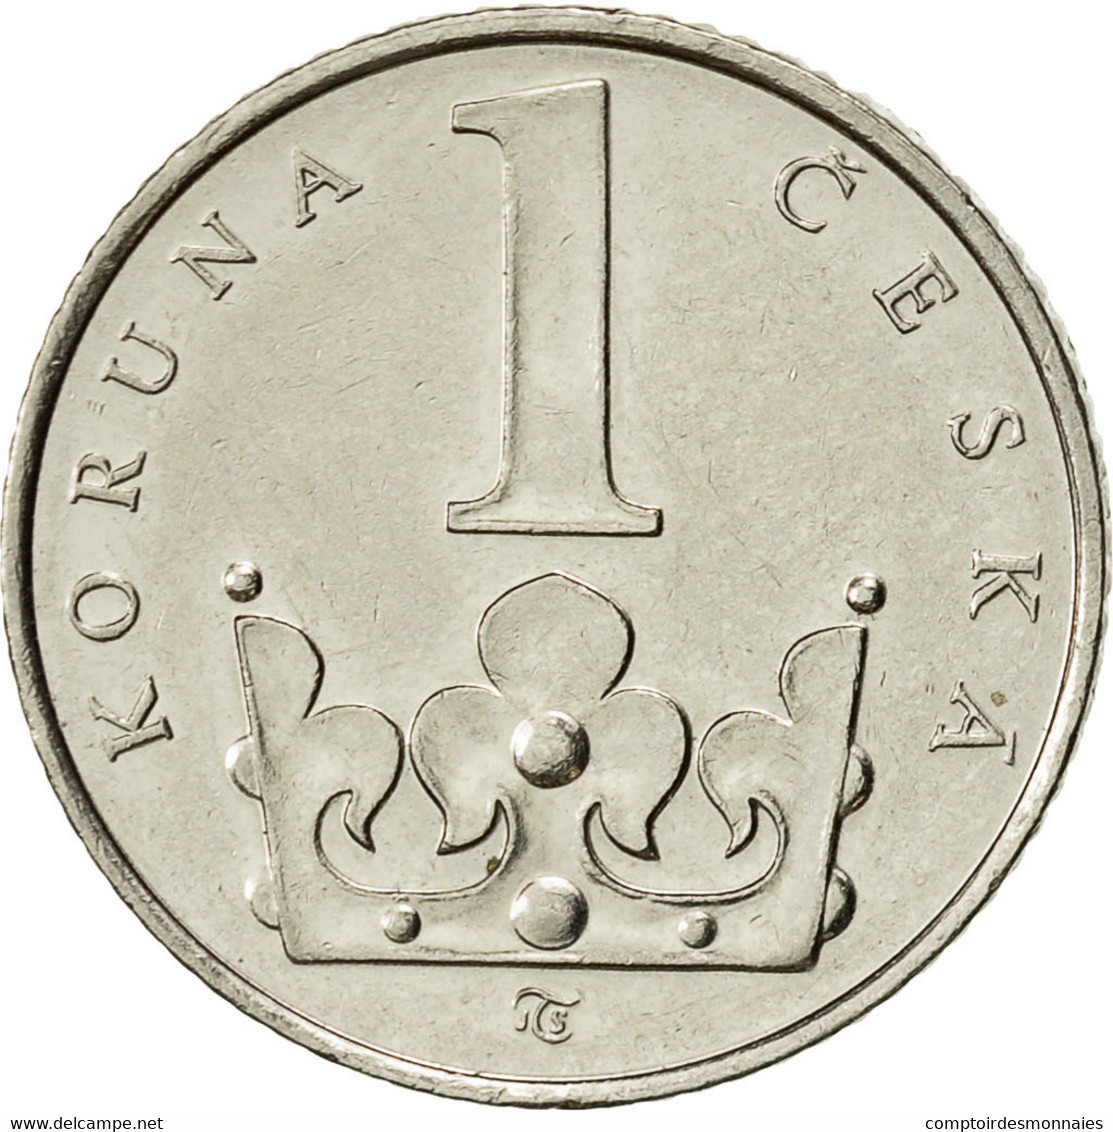 Monnaie, République Tchèque, Koruna, 1995, TTB+, Nickel Plated Steel, KM:7 - Tchéquie